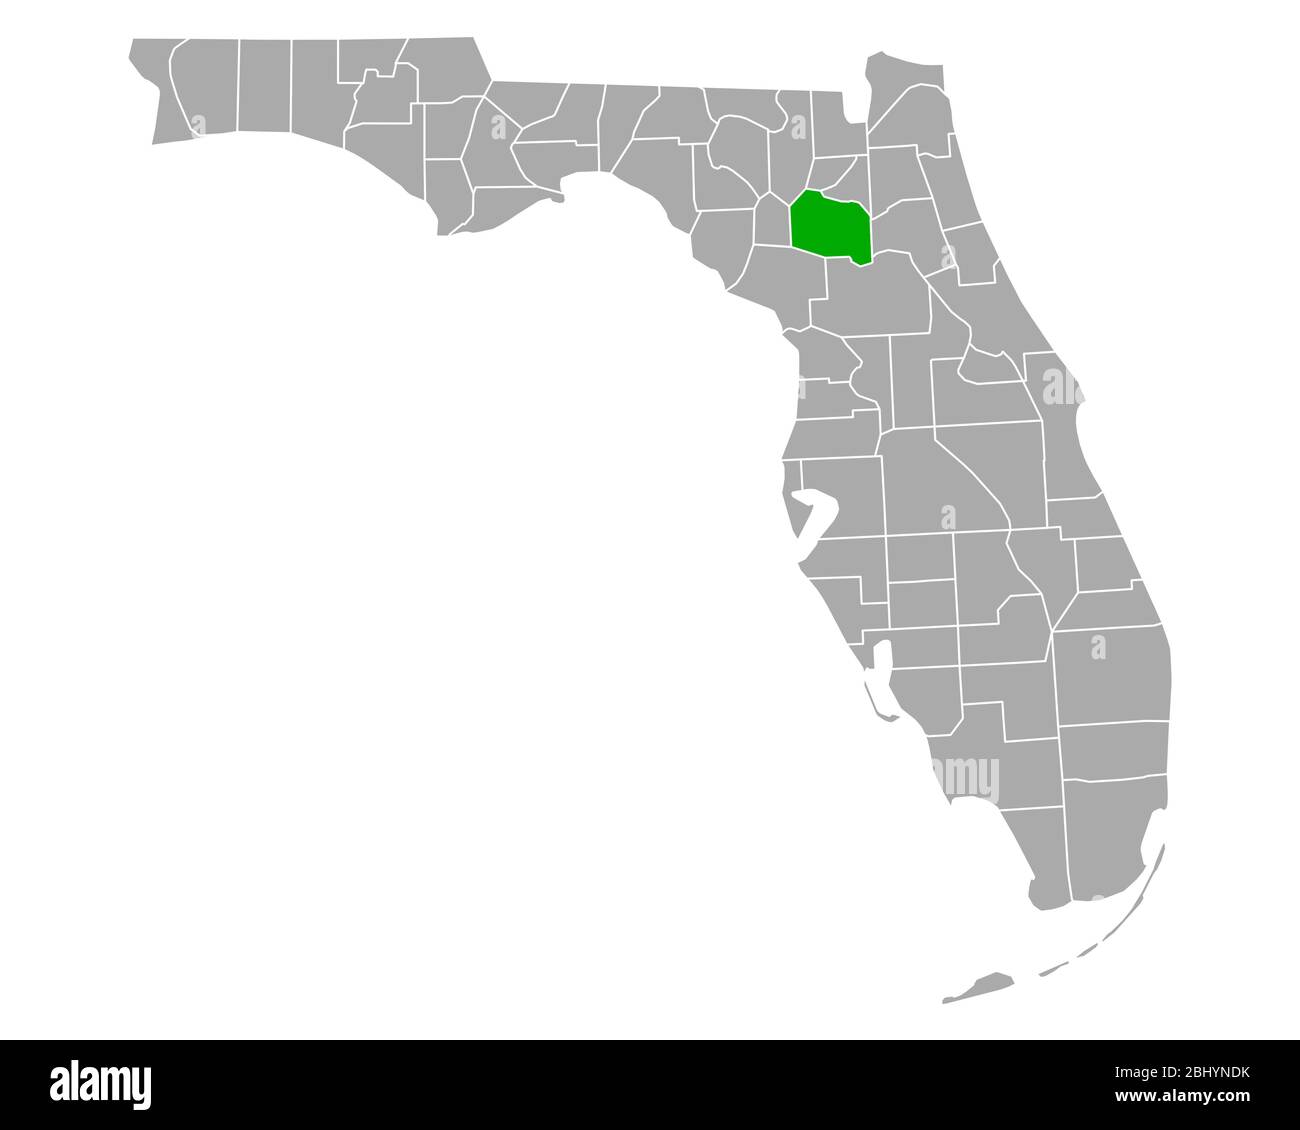 Map Of Alachua In Florida 2BHYNDK 